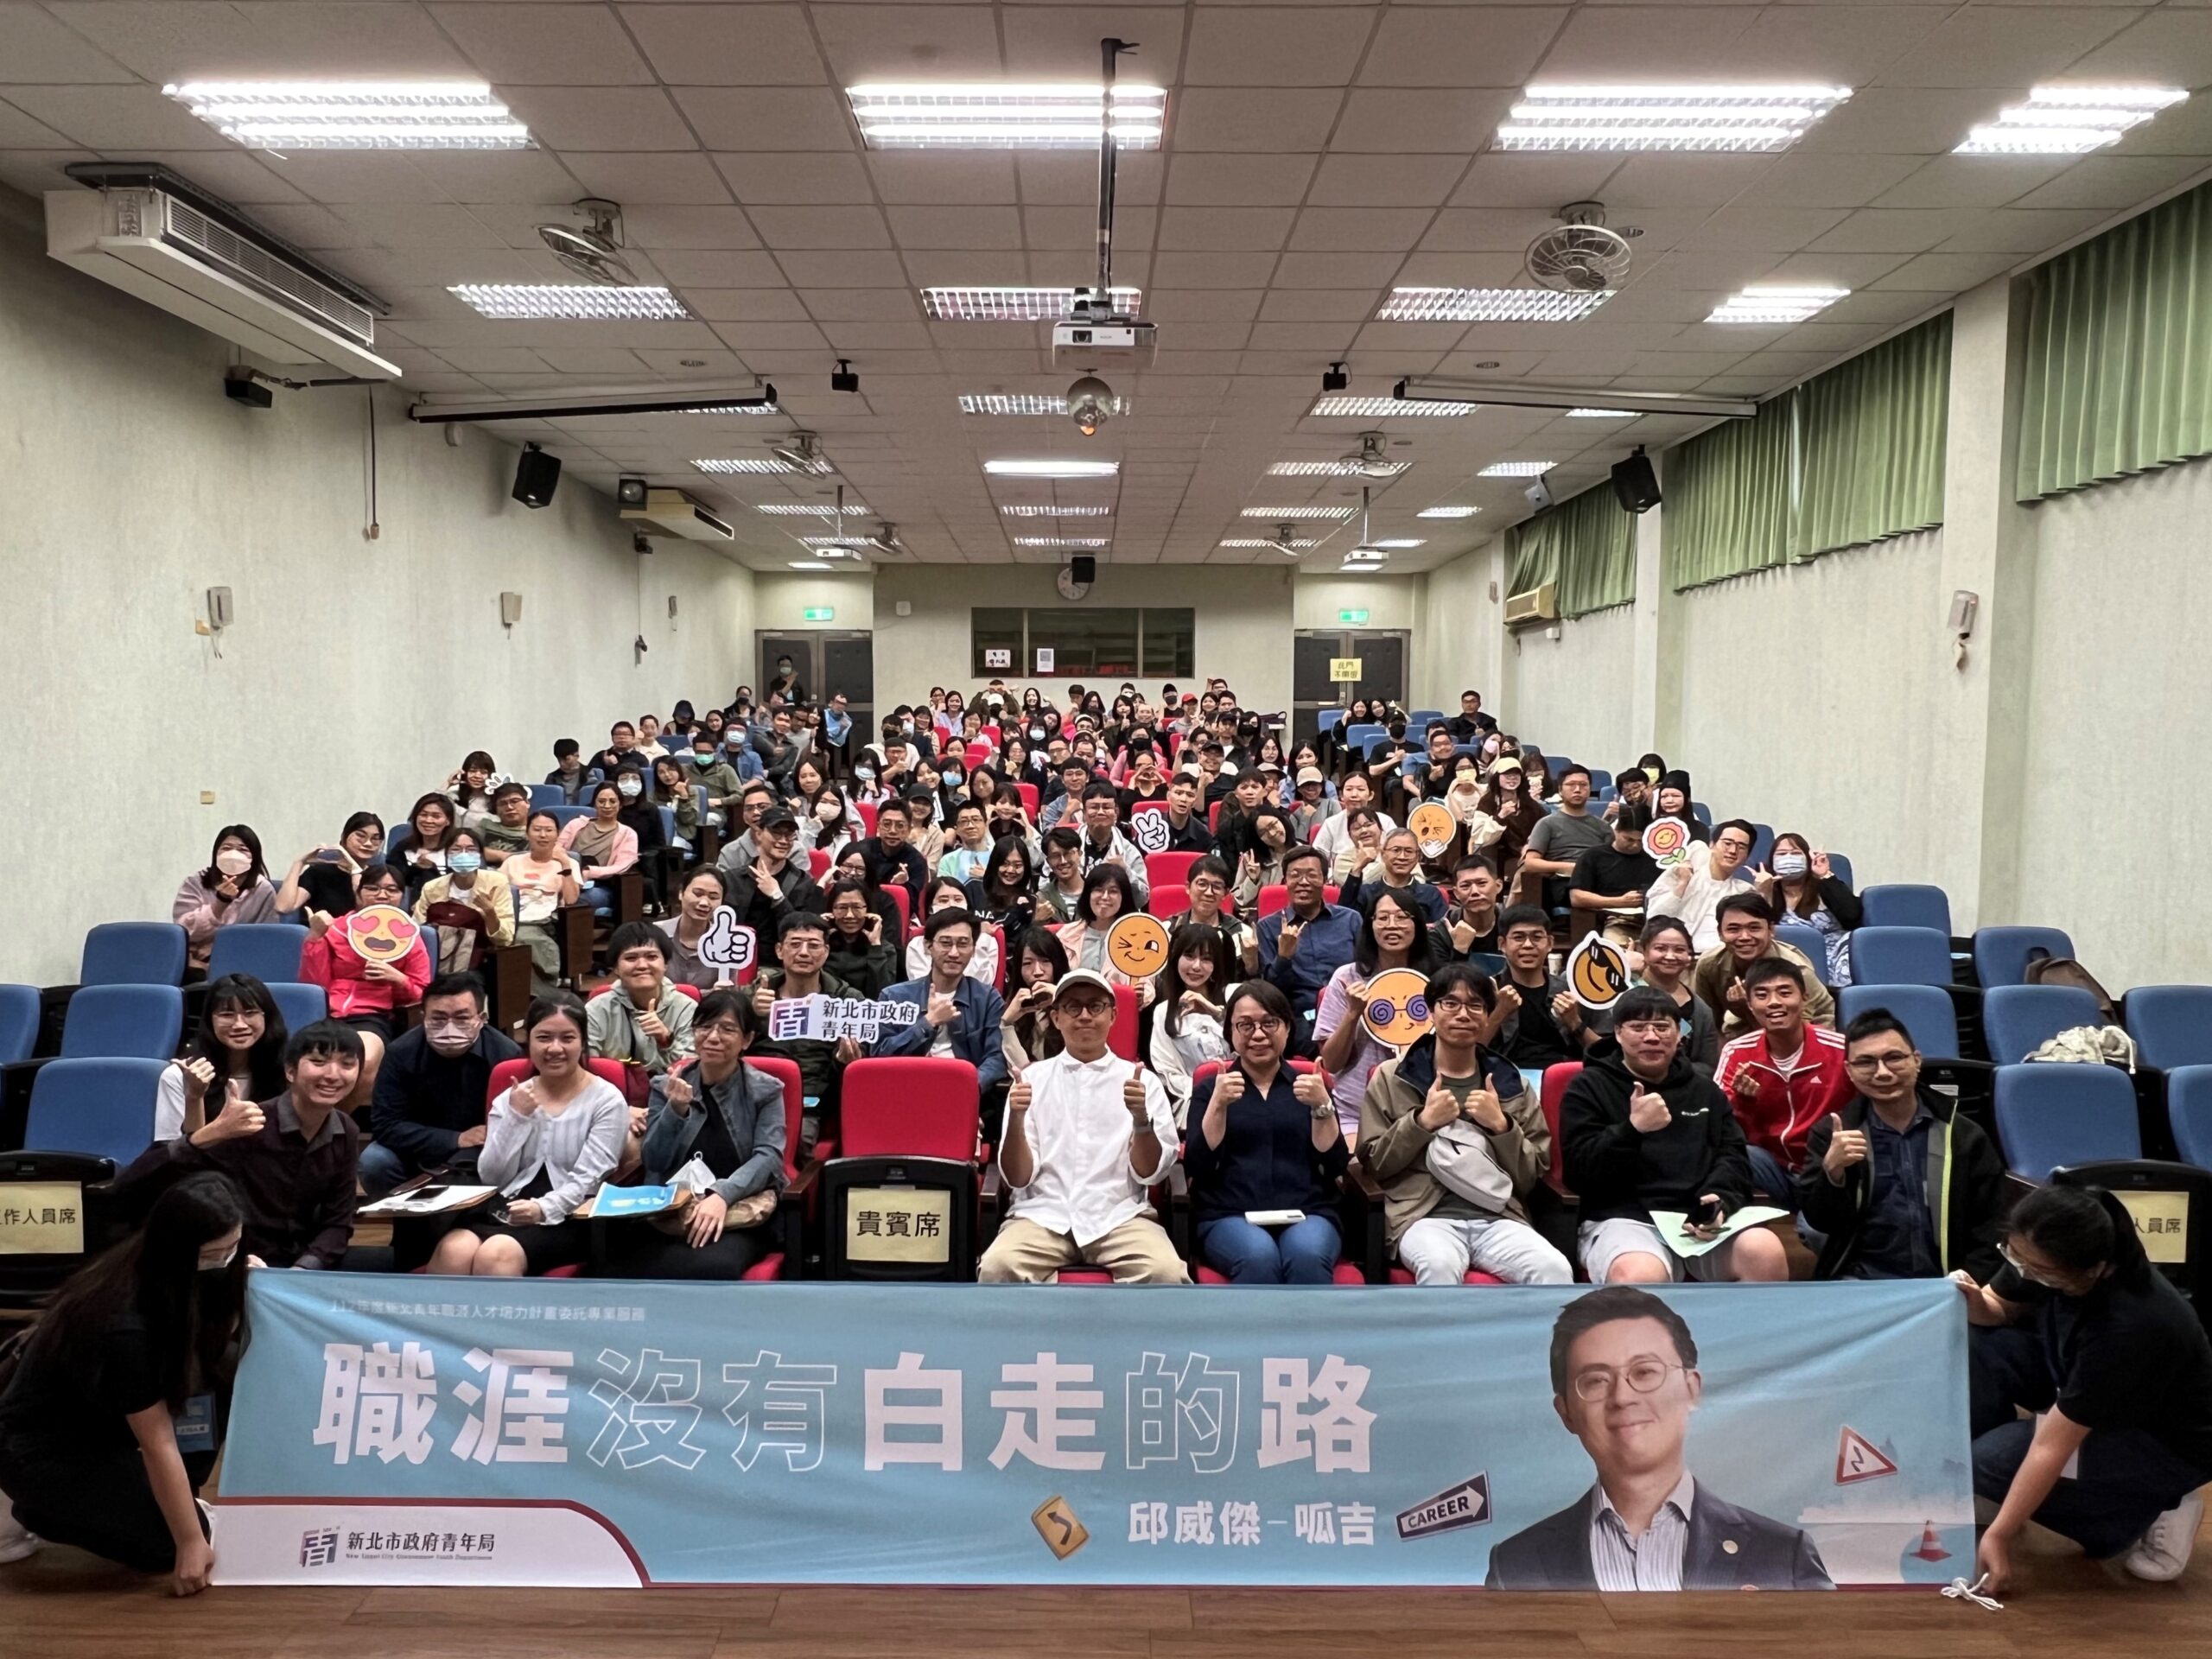 新北AI課程風潮 「新北有課 UKO」4,500名青年熱烈參與 滿意度96%創佳績 - 早安台灣新聞 | Morning Taiwan News